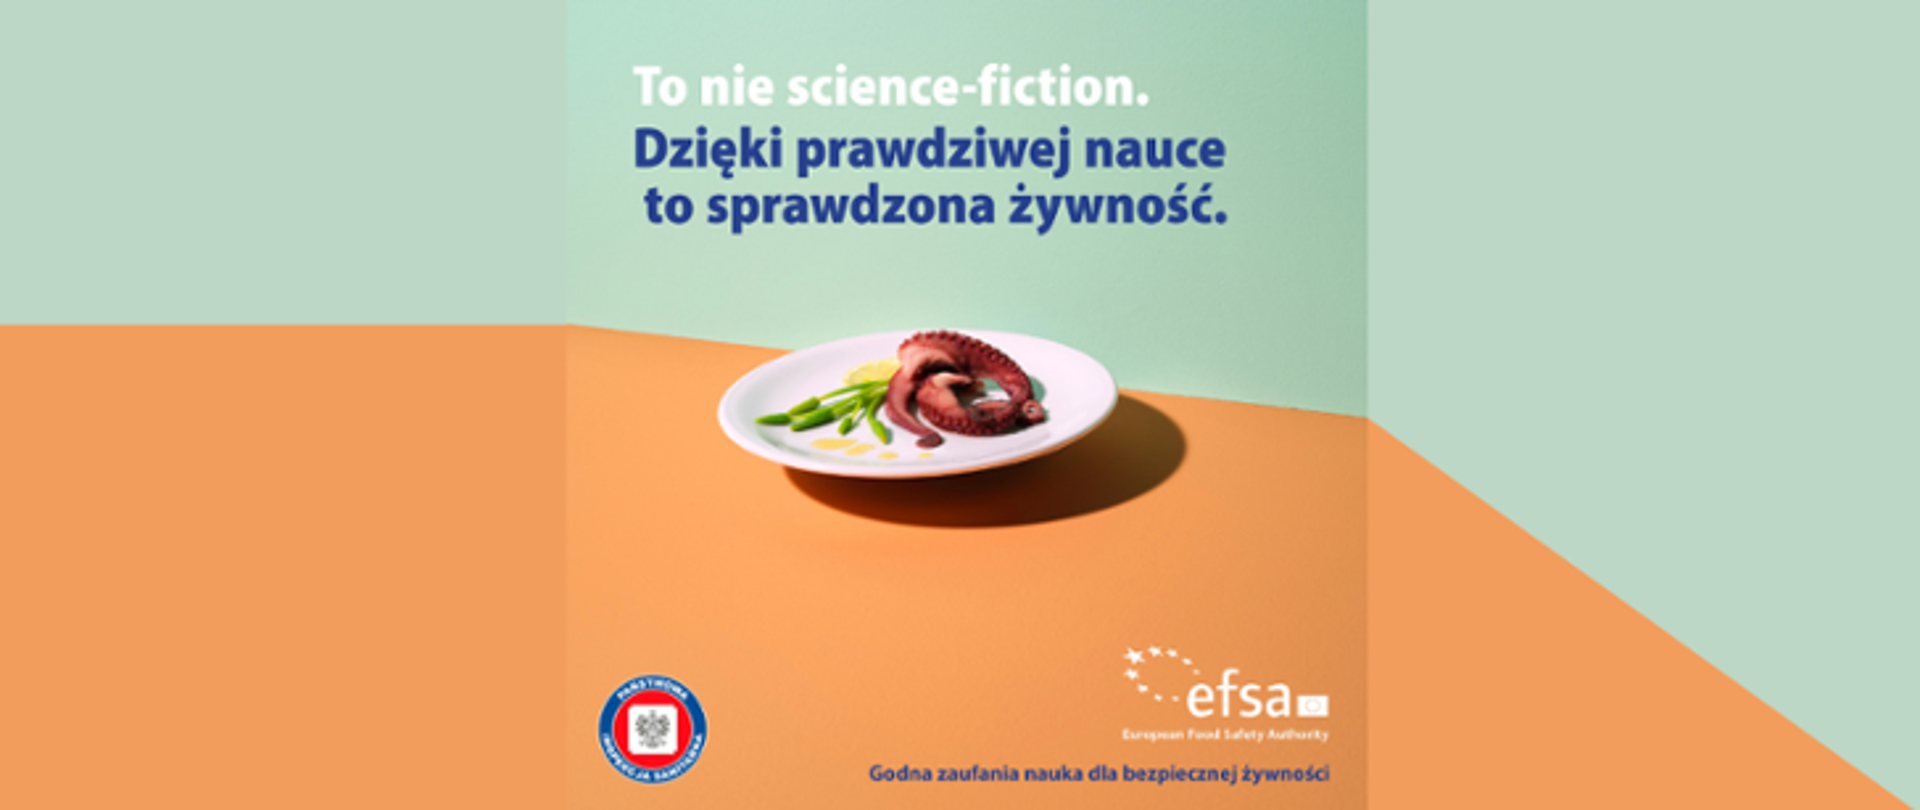 Grafika, na której widnieje napis: To nie science-fiction. Dzięki prawdziwej nauce to sprawdzona żywność. Poniżej znajduje się talerz z jedzeniem. Na samym dole widoczne jest logo Państwowej Inspekcji Sanitarnej oraz Europejskiego Urzędu ds. Bezpieczeństwa Żywności.